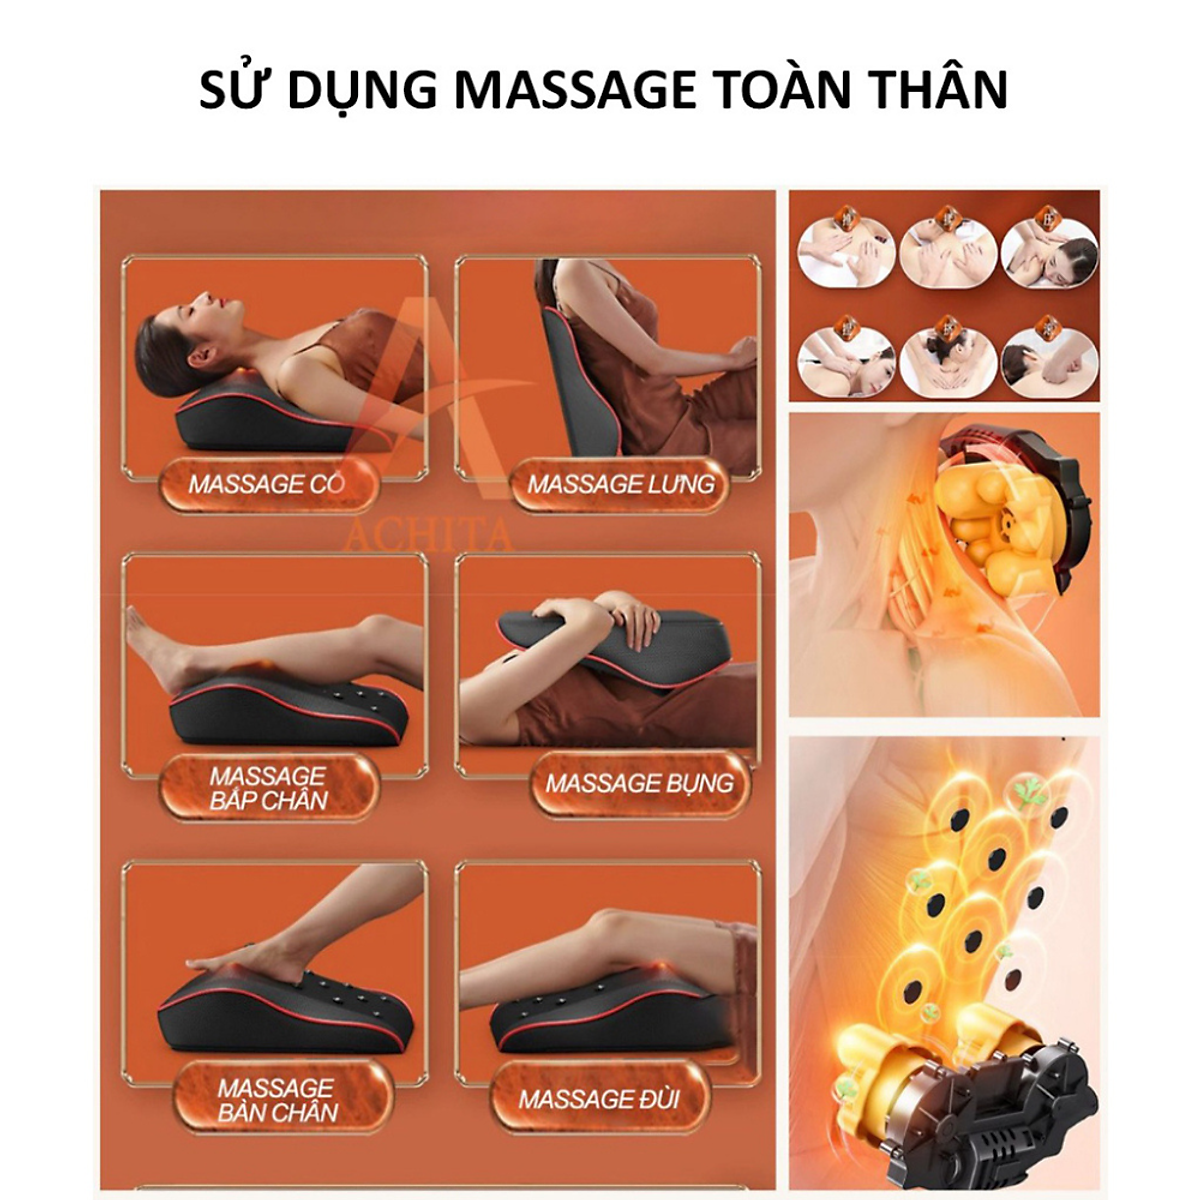 Hình ảnh Gối Massage Cổ Vai Gáy, Máy Massage Hồng Ngoại Megou Thế Hệ Mới Cao Cấp, Hỗ Trợ Giảm Nhức Mỏi Toàn Thân Hiệu Quả - Hàng nhập khẩu